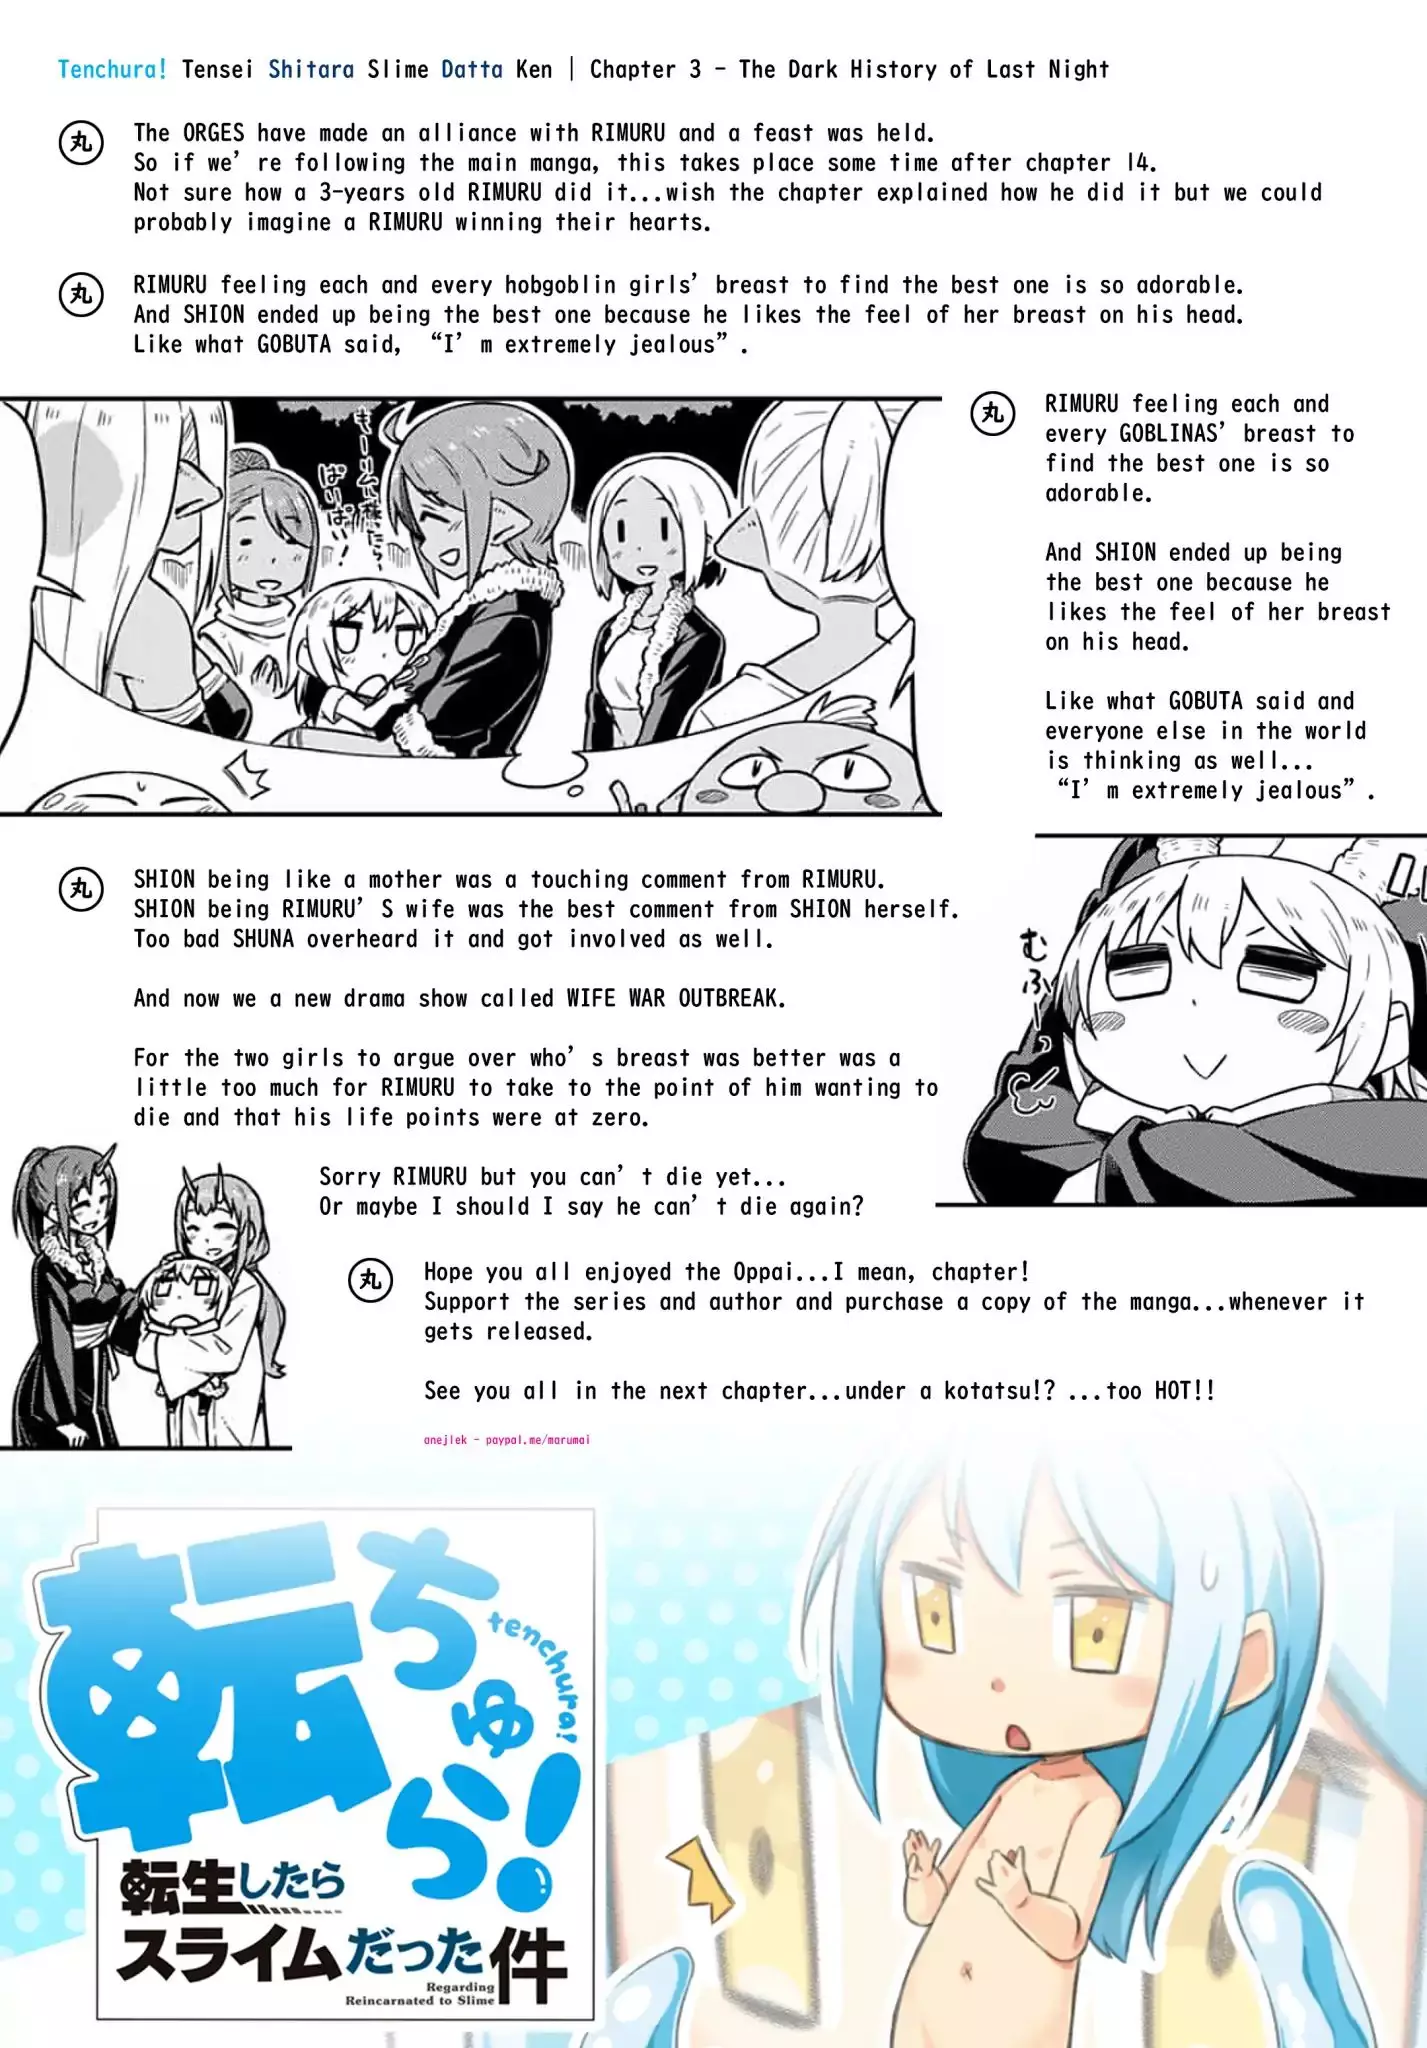 Tenchura! Tensei Shitara Slime Datta Ken - 3 page 17